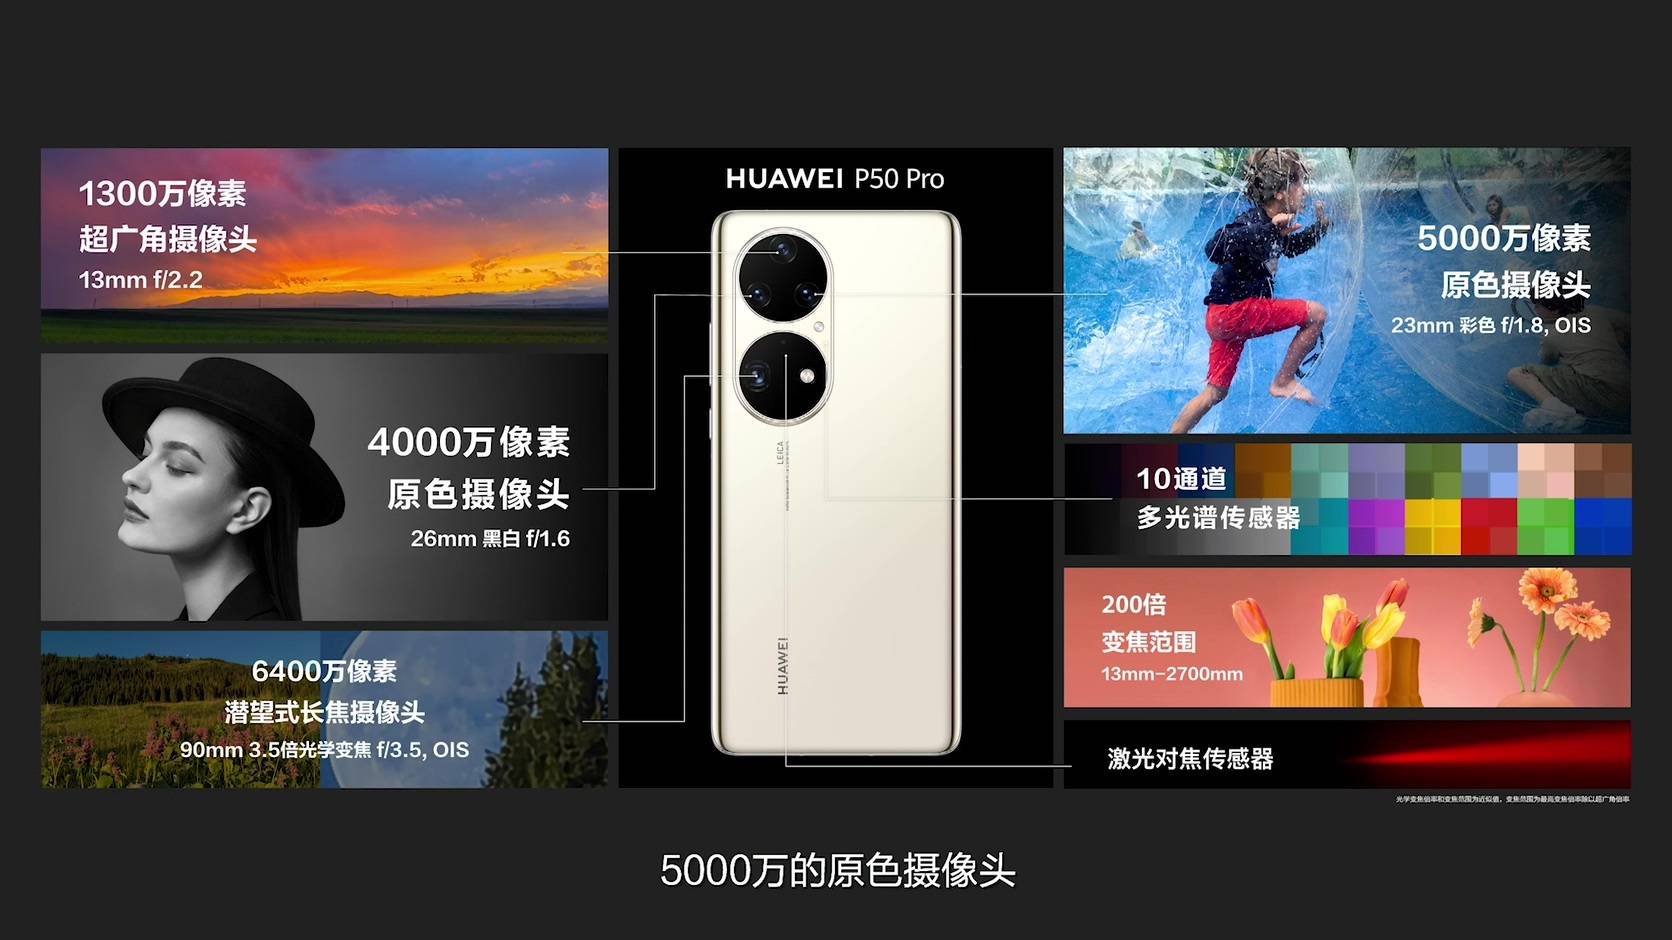 live 480836706 78290975.flv 20210729 194209.044 - Sintesi della conferenza Huawei P50: a partire da 4488 yuan! Chip Kirin e Snapdragon opzionali, le prestazioni dell’immagine soddisfano l’appetito